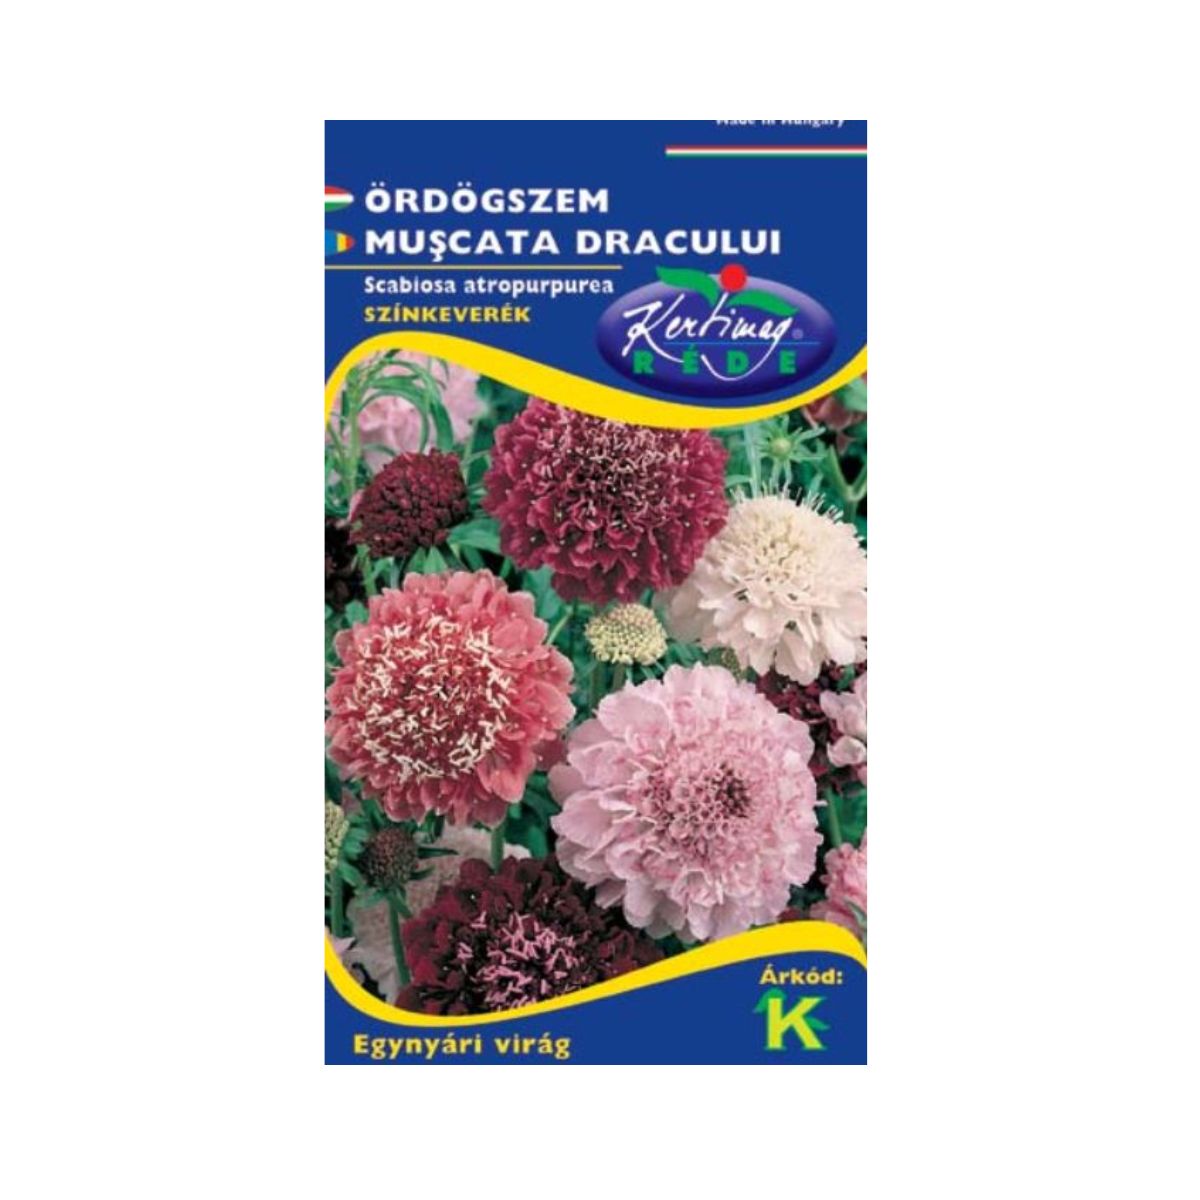 Seminte flori - Seminte de OCHIUL DRACULUI mix, KERTIMAG, hectarul.ro